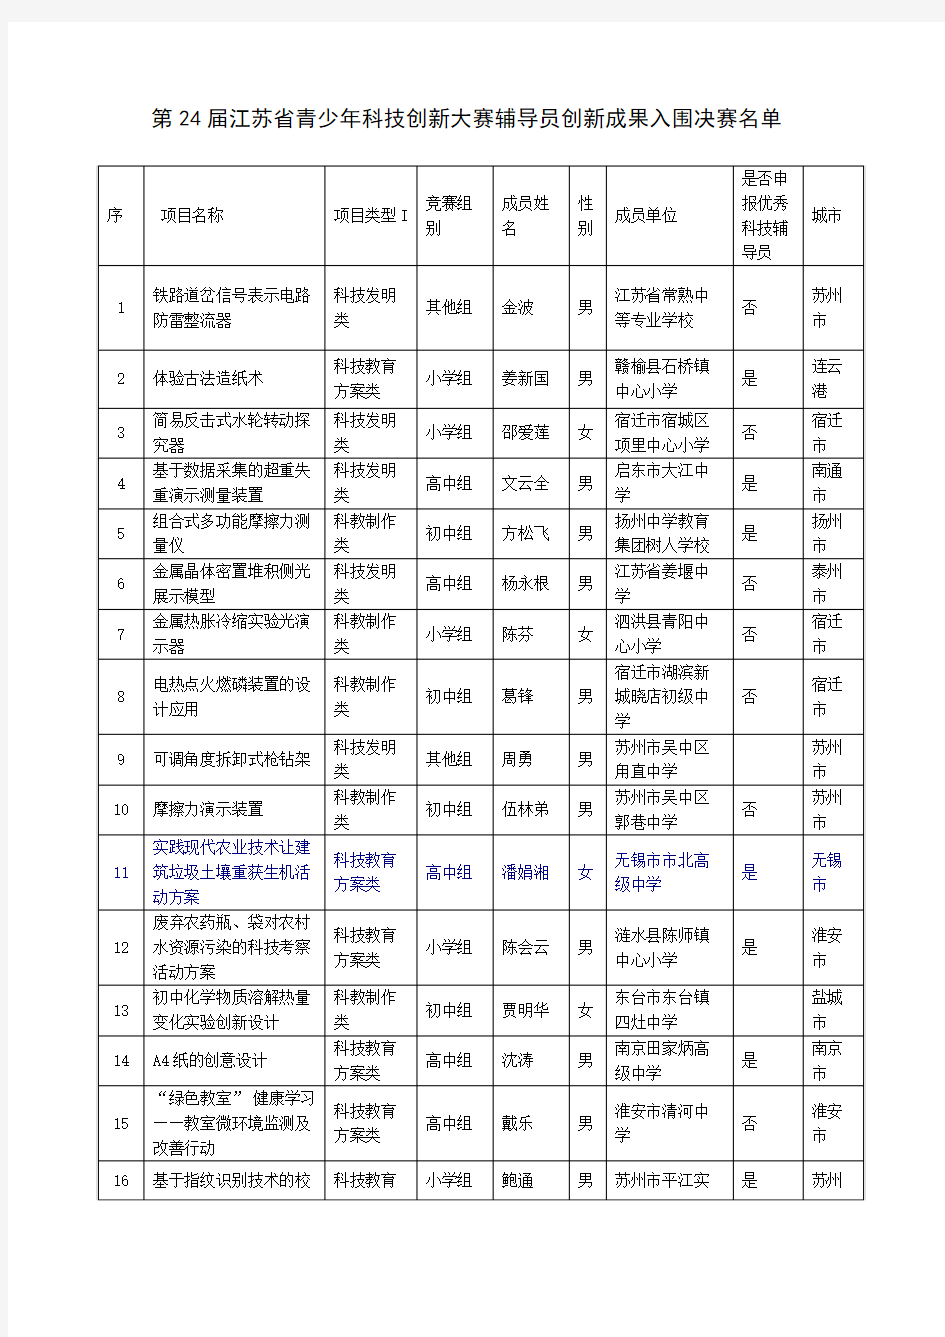 第24届江苏省青少年科技创新大赛辅导员创新成果入围决赛名单